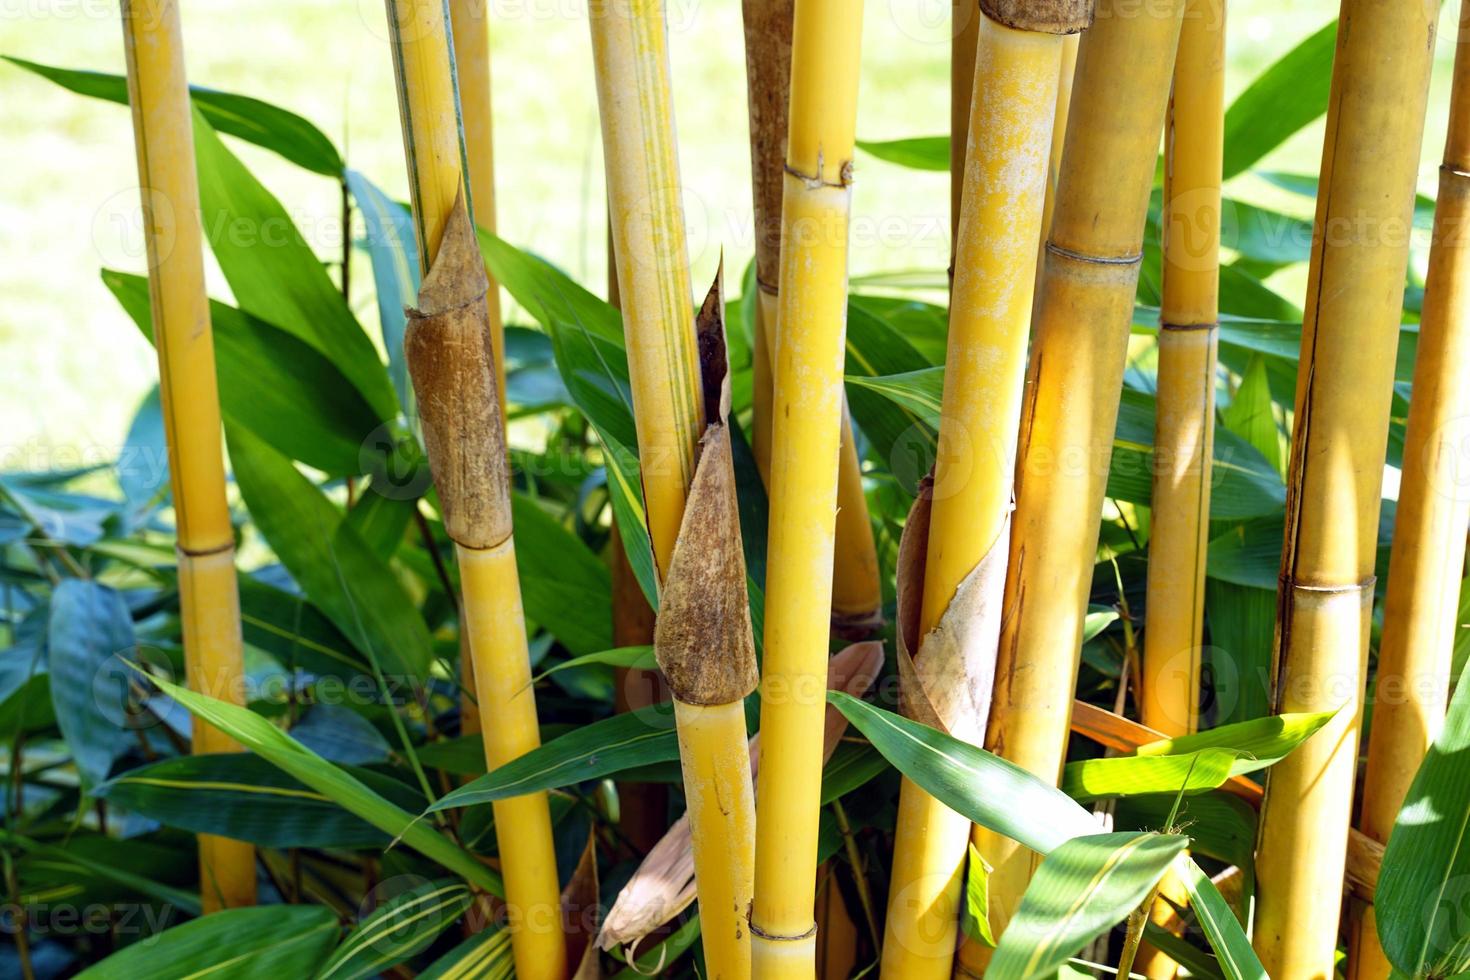 phyllostachys sulphurea est un bambou d'ornement planté dans les maisons, les parcs, les jardins, les commerces car c'est un beau bambou jaune doré. mise au point douce et sélective. photo